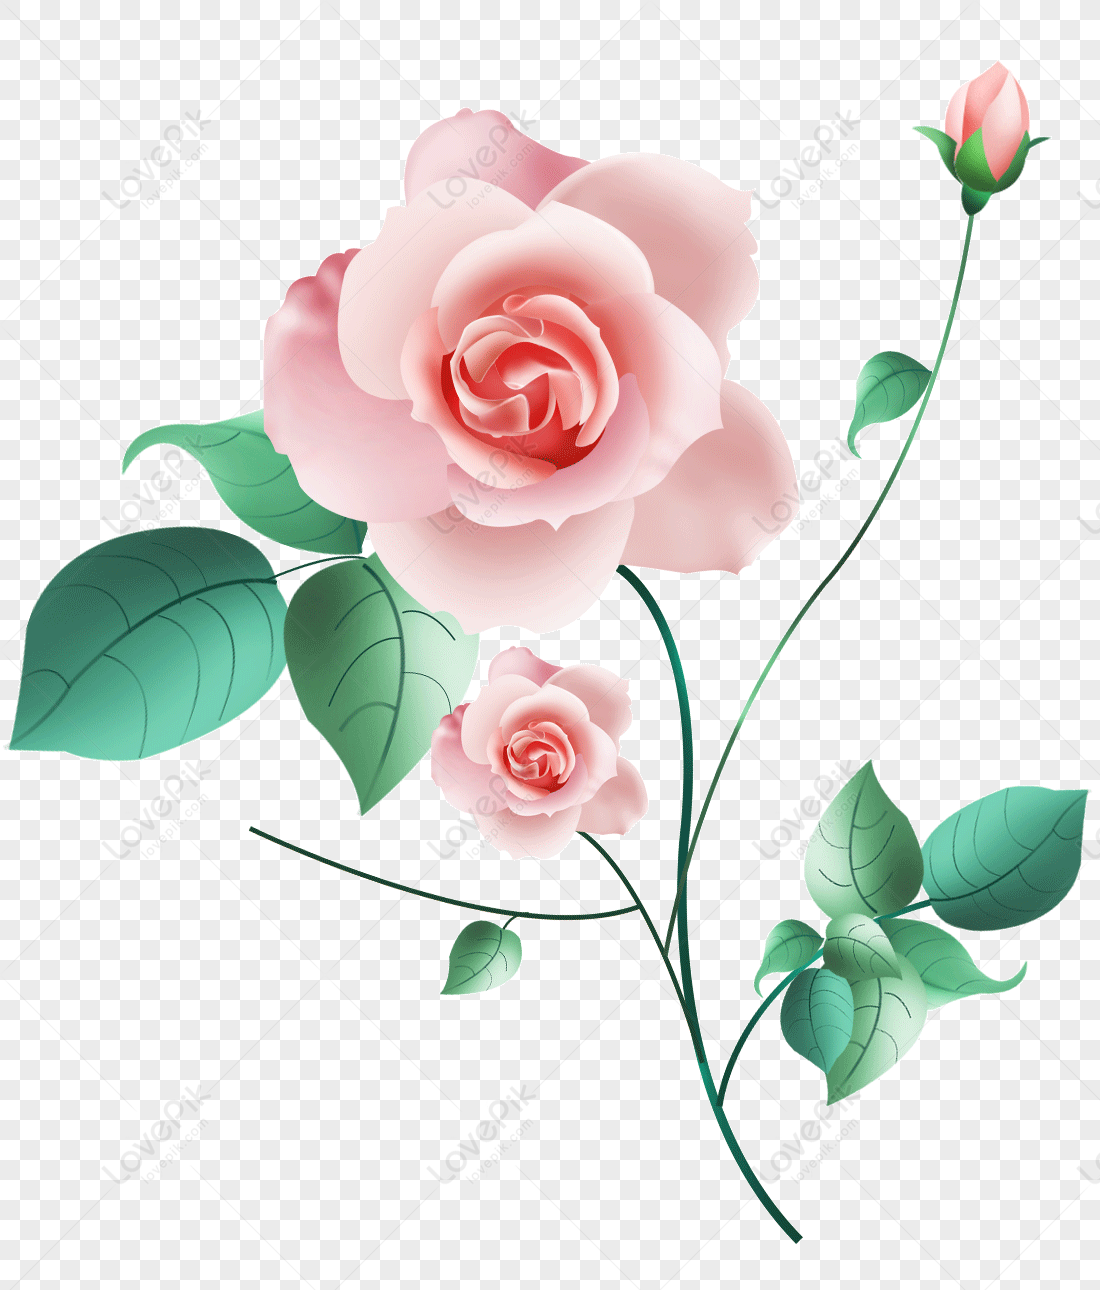 Trong hình ảnh này, bạn sẽ được ngắm nhìn những bông hoa hồng màu hồng nhẹ nhàng, duyên dáng và đầy sức sống. Đó chắc chắn là một trải nghiệm tuyệt vời cho những người yêu hoa.